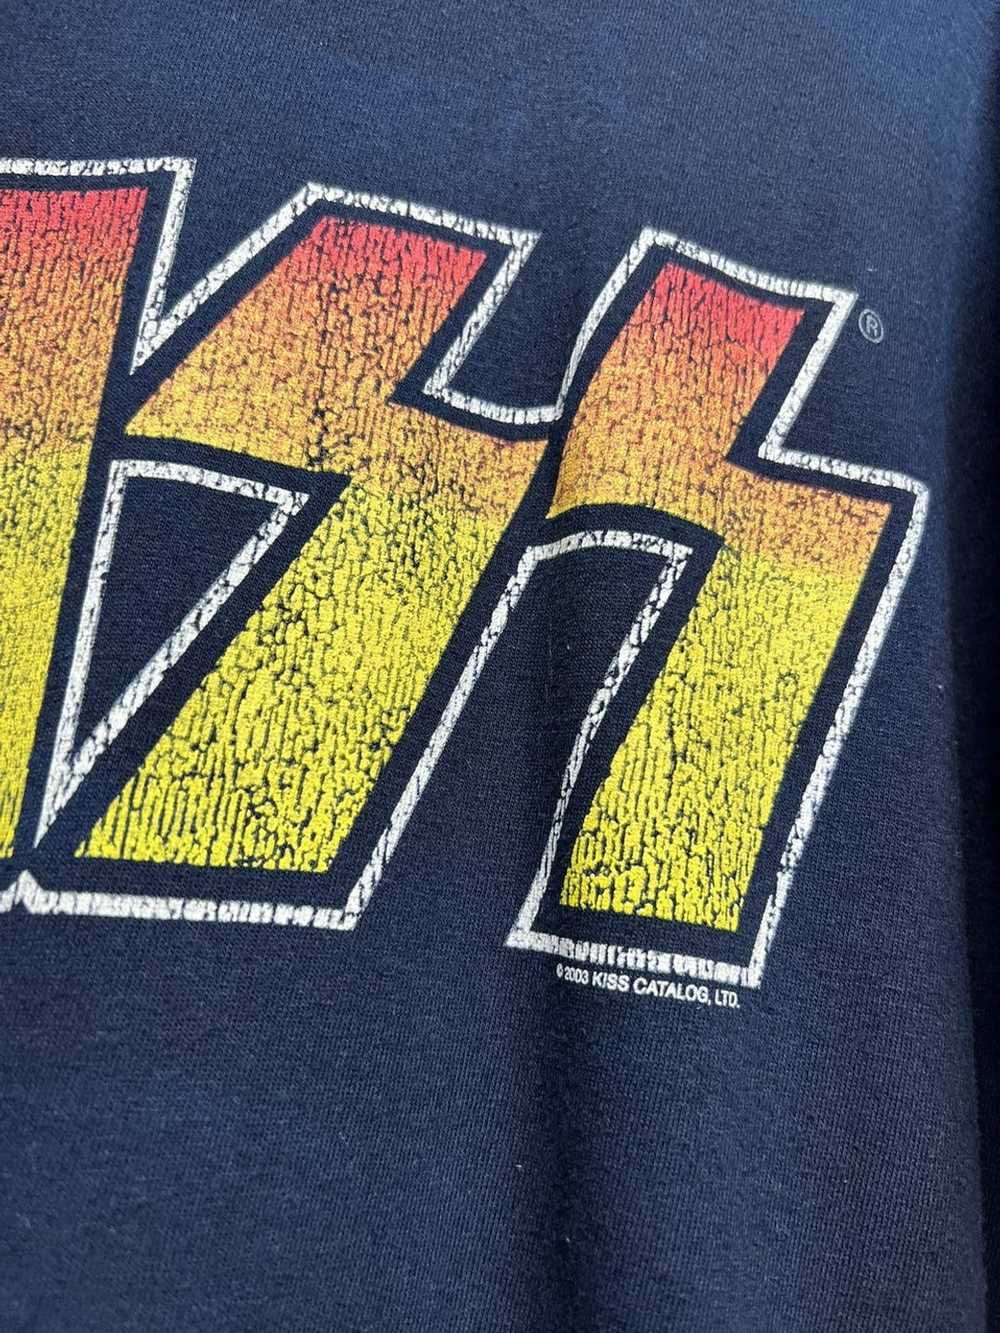 Band Tees × Kith × Rock T Shirt Vintage 2003 Kiss… - image 4